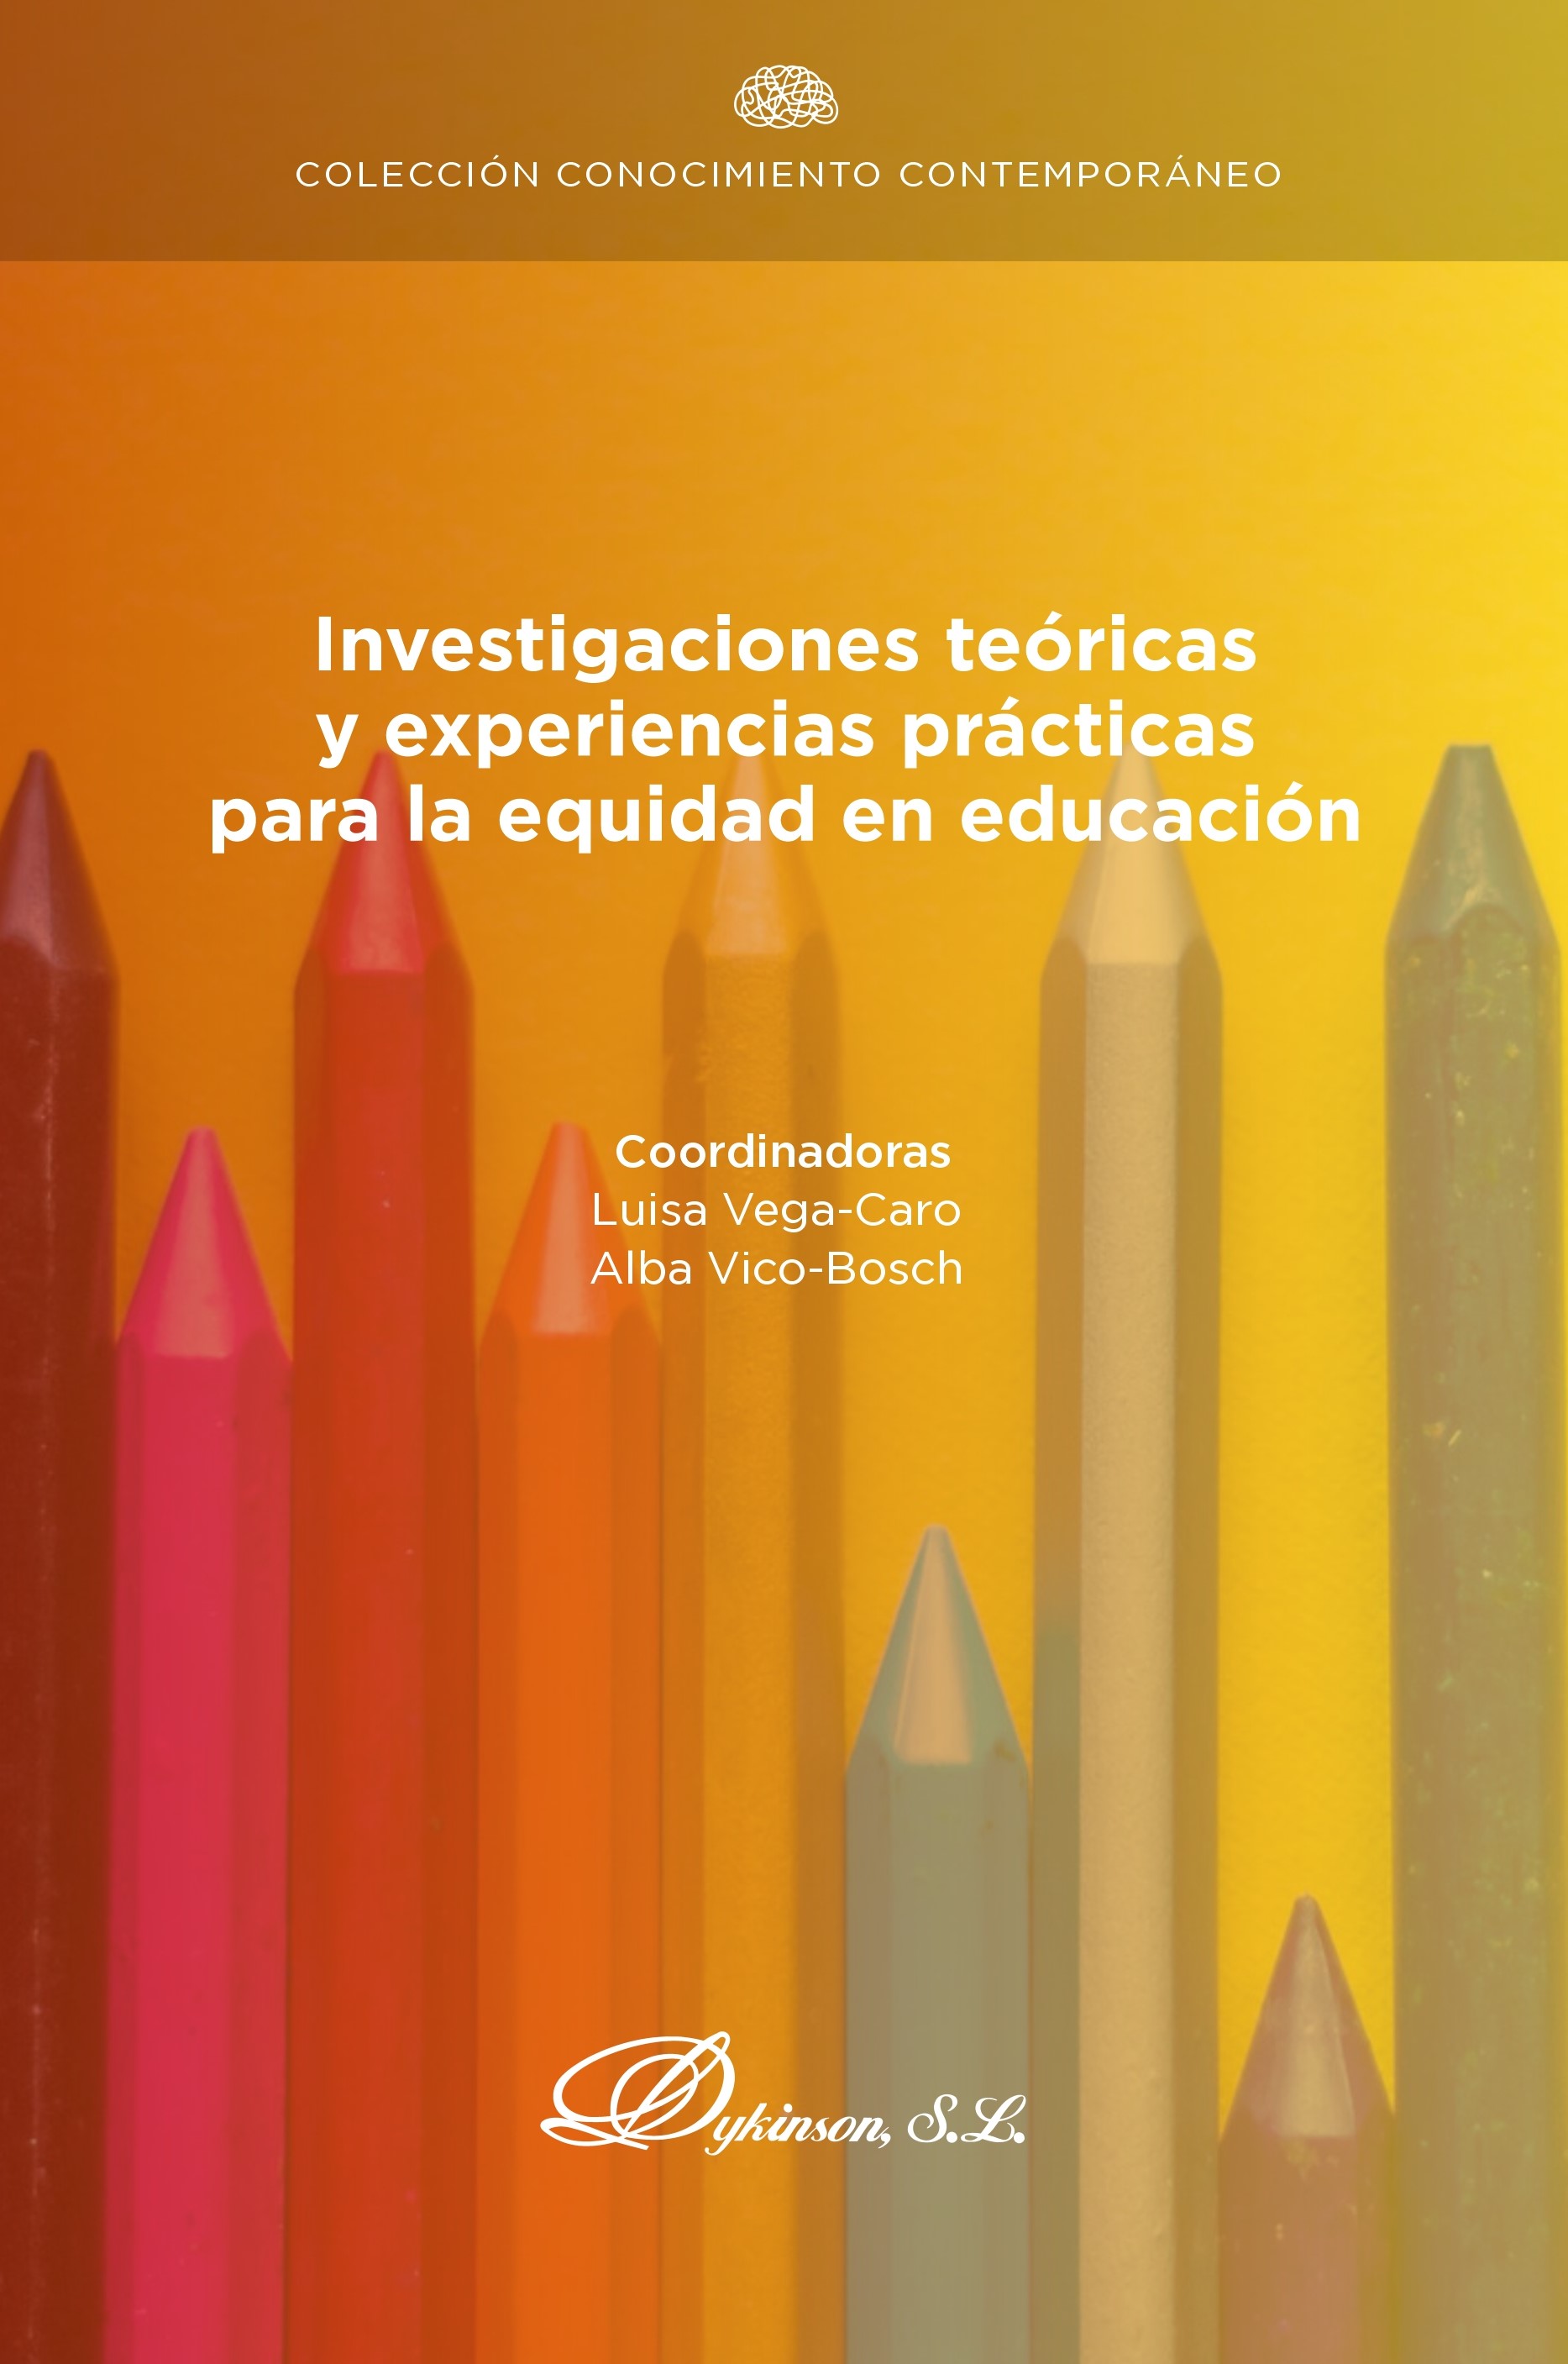 Imagen de portada del libro Investigaciones teóricas y experiencias prácticas para la equidad en educación